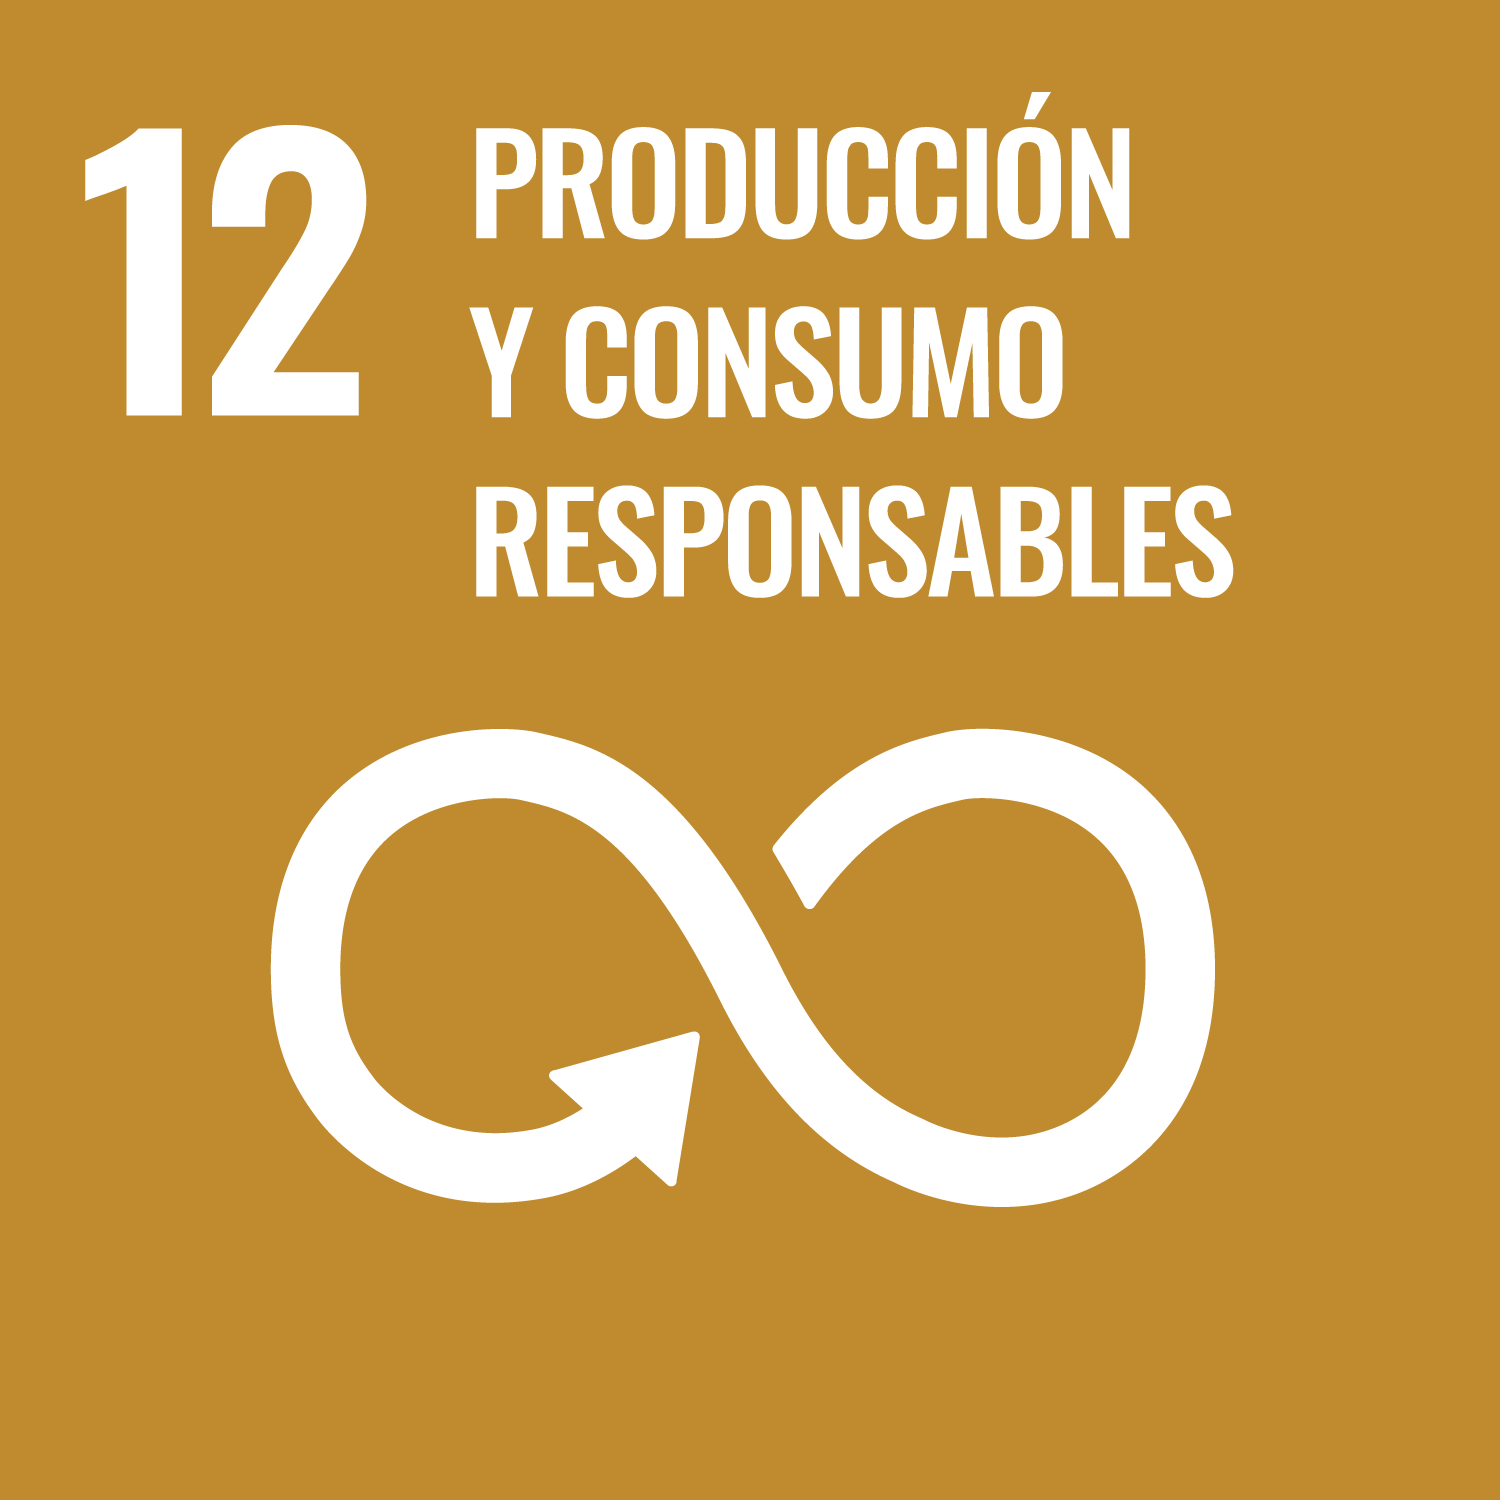 Título "12 Producción y consumo responsables" con fondo khaki